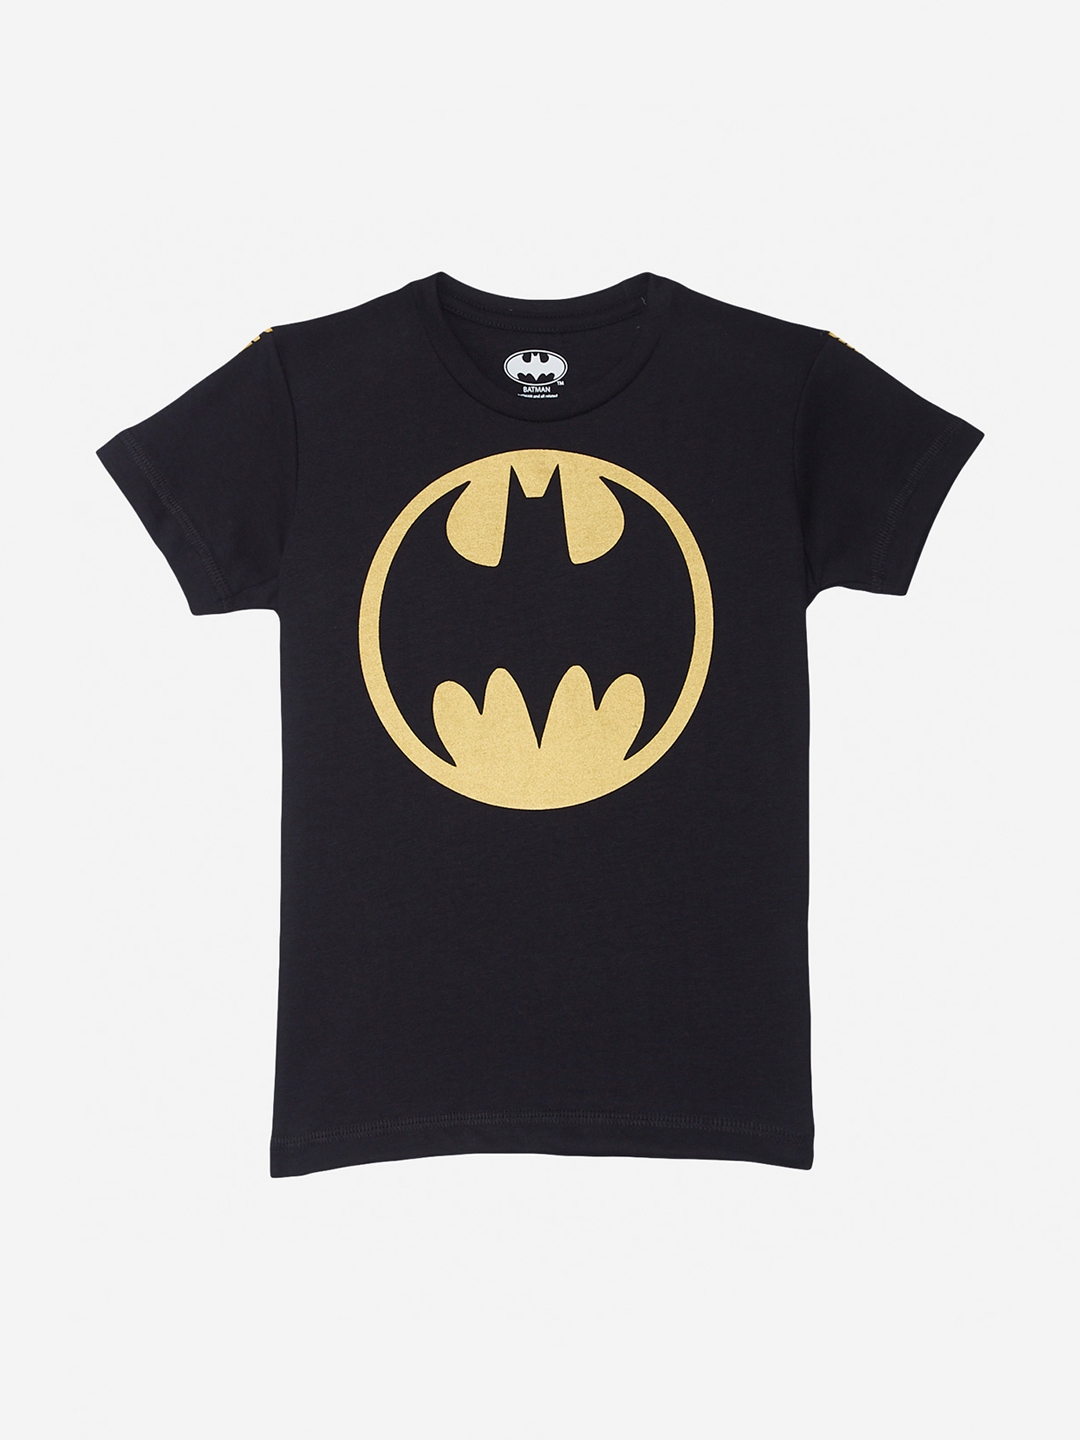 Buy Batman - Tshirts for Boys 9121835 | Myntra